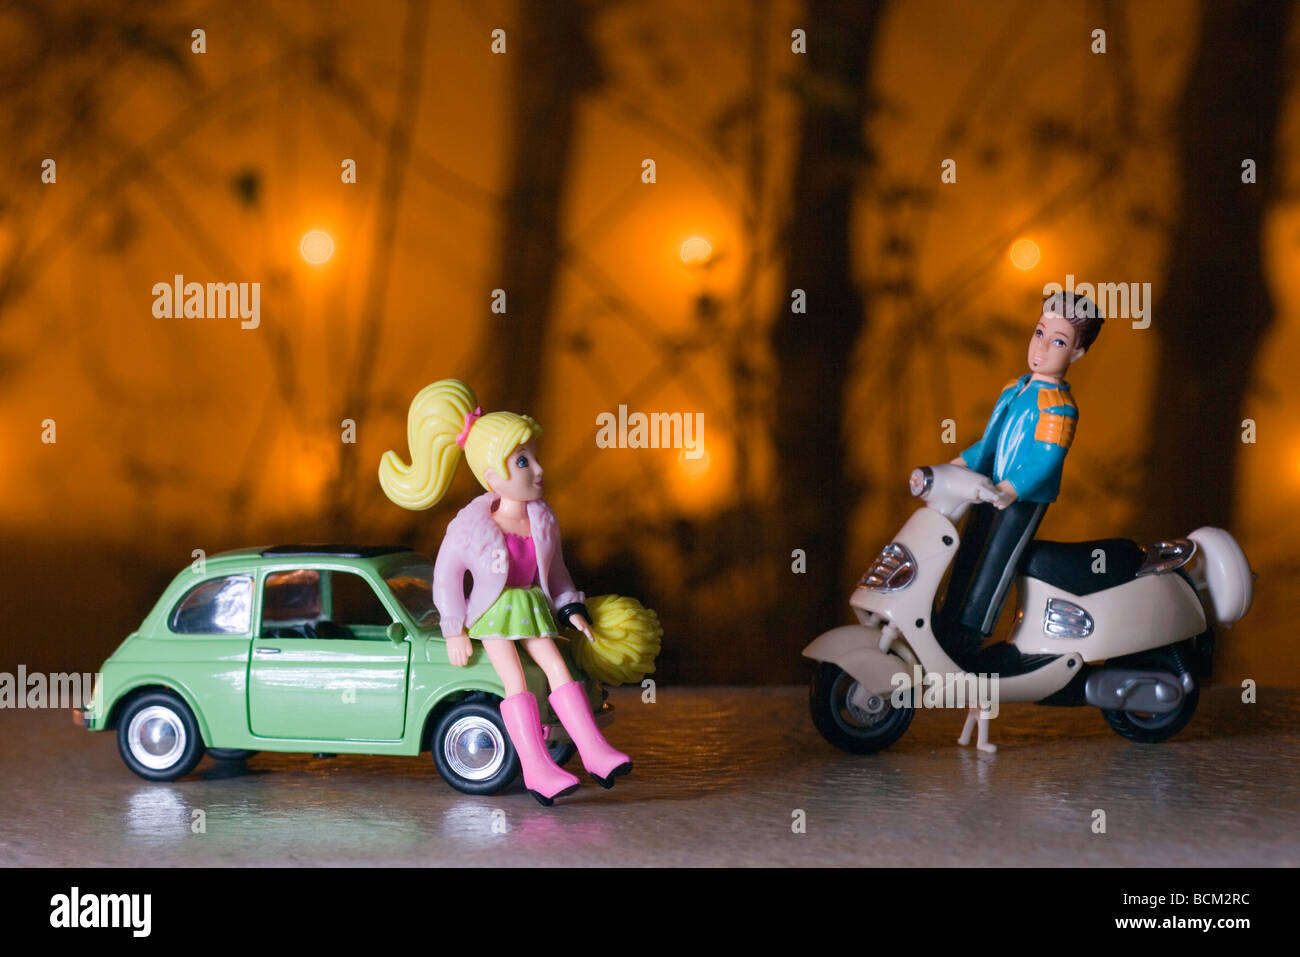 Juguete masculino figura en ciclomotor acercando figura femenina RECOSTADA contra el coche de juguete Foto de stock